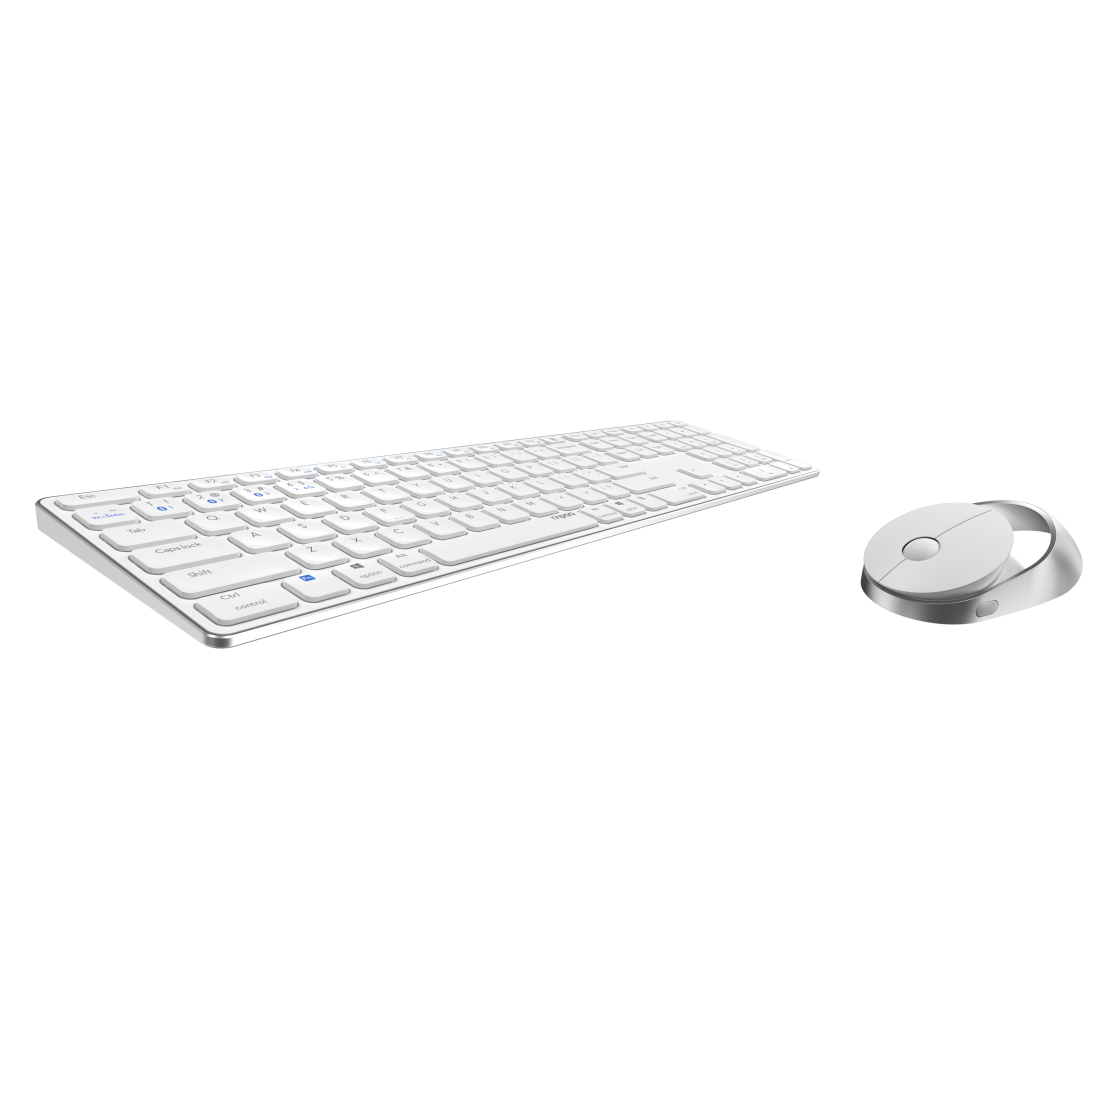 Rapoo 9850M Tastatur Maus enthalten RF Wireless + Bluetooth QWERTZ Deutsch Weiß (00215385)